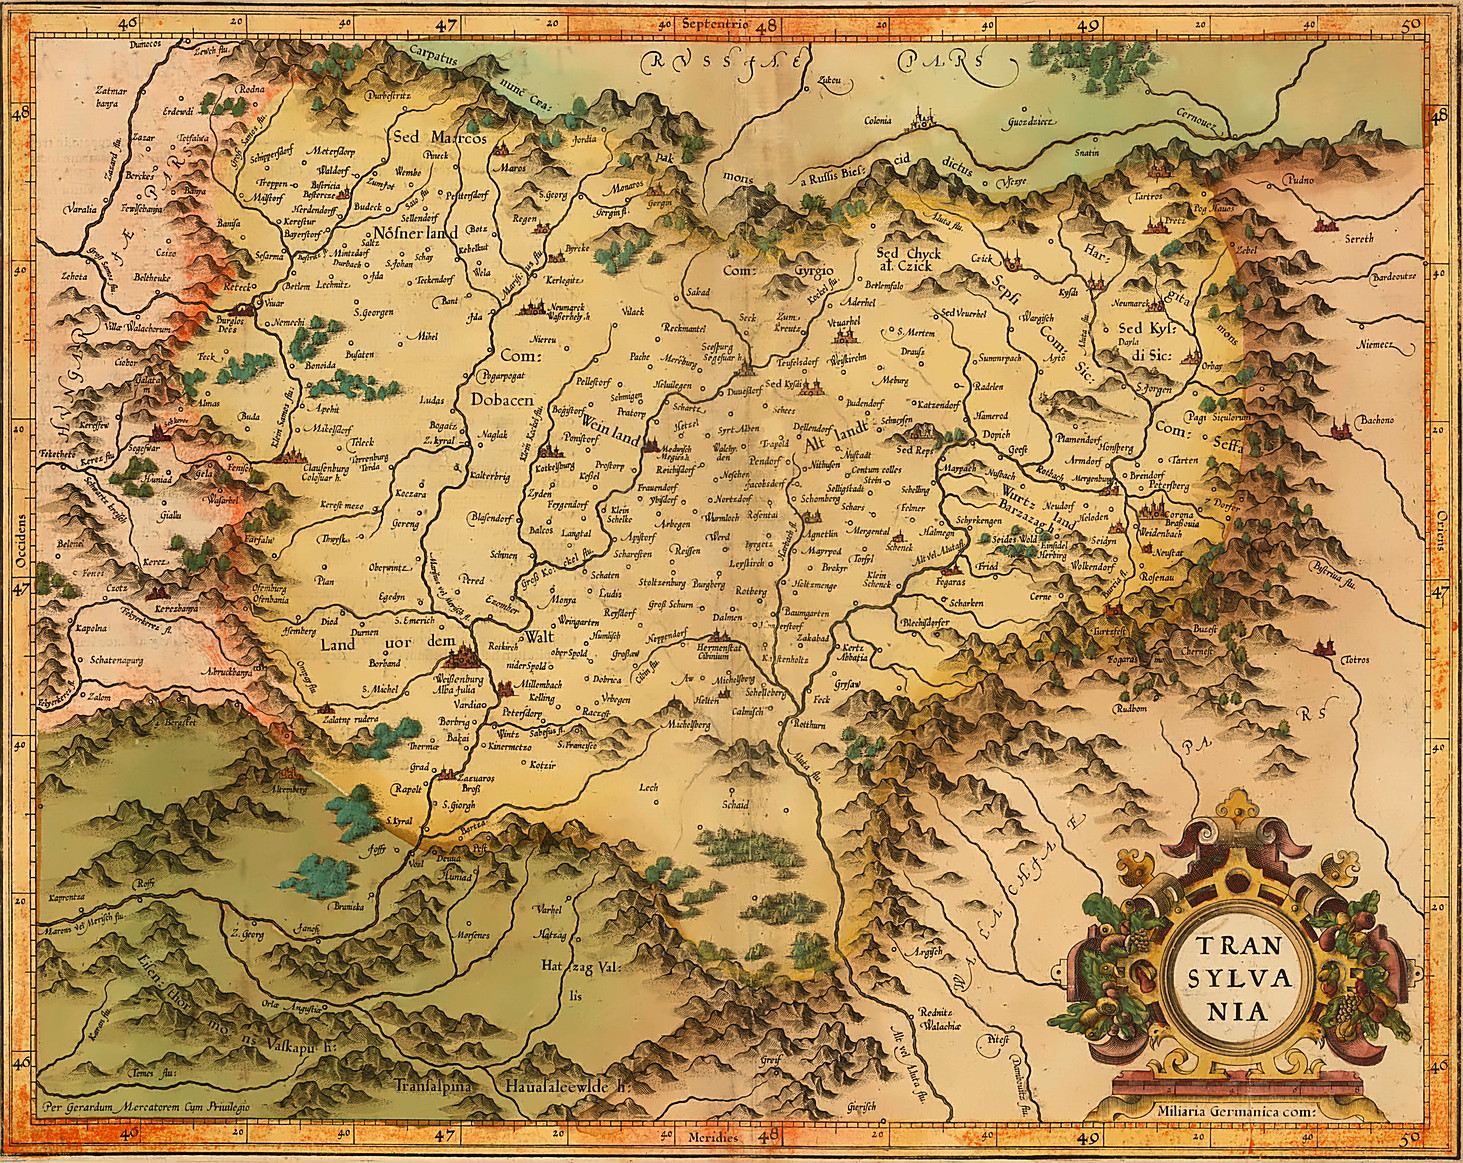 Harta Transilvania – Transylvania Map autor Gerard Mercator la Amsterdam  1610 – Istoria se repeta Fotografii vechi Arhitectura veche